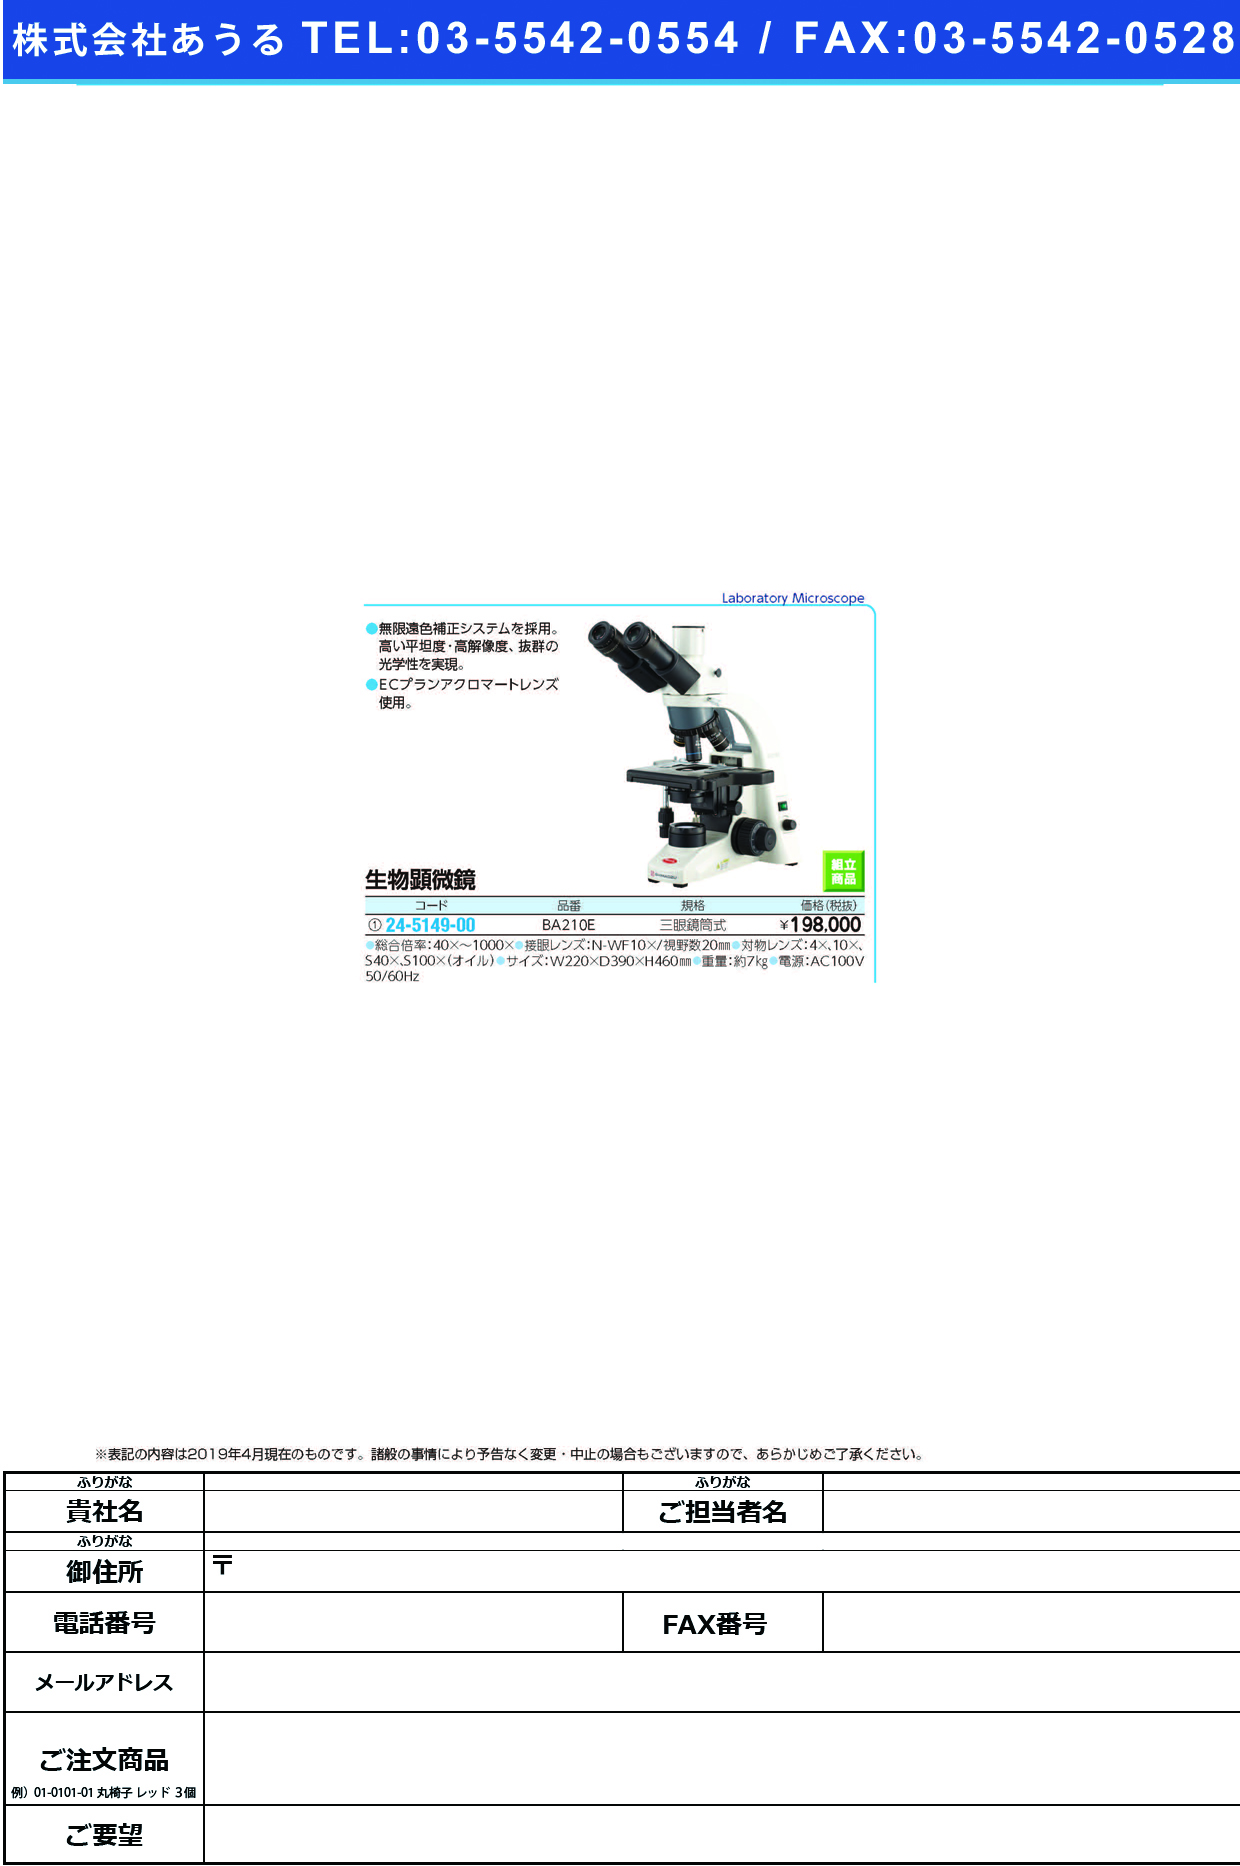 (24-5149-00)三眼生物顕微鏡 BA210E ｻﾝｶﾞﾝｾｲﾌﾞﾂｹﾝﾋﾞｷｮｳ【1台単位】【2019年カタログ商品】